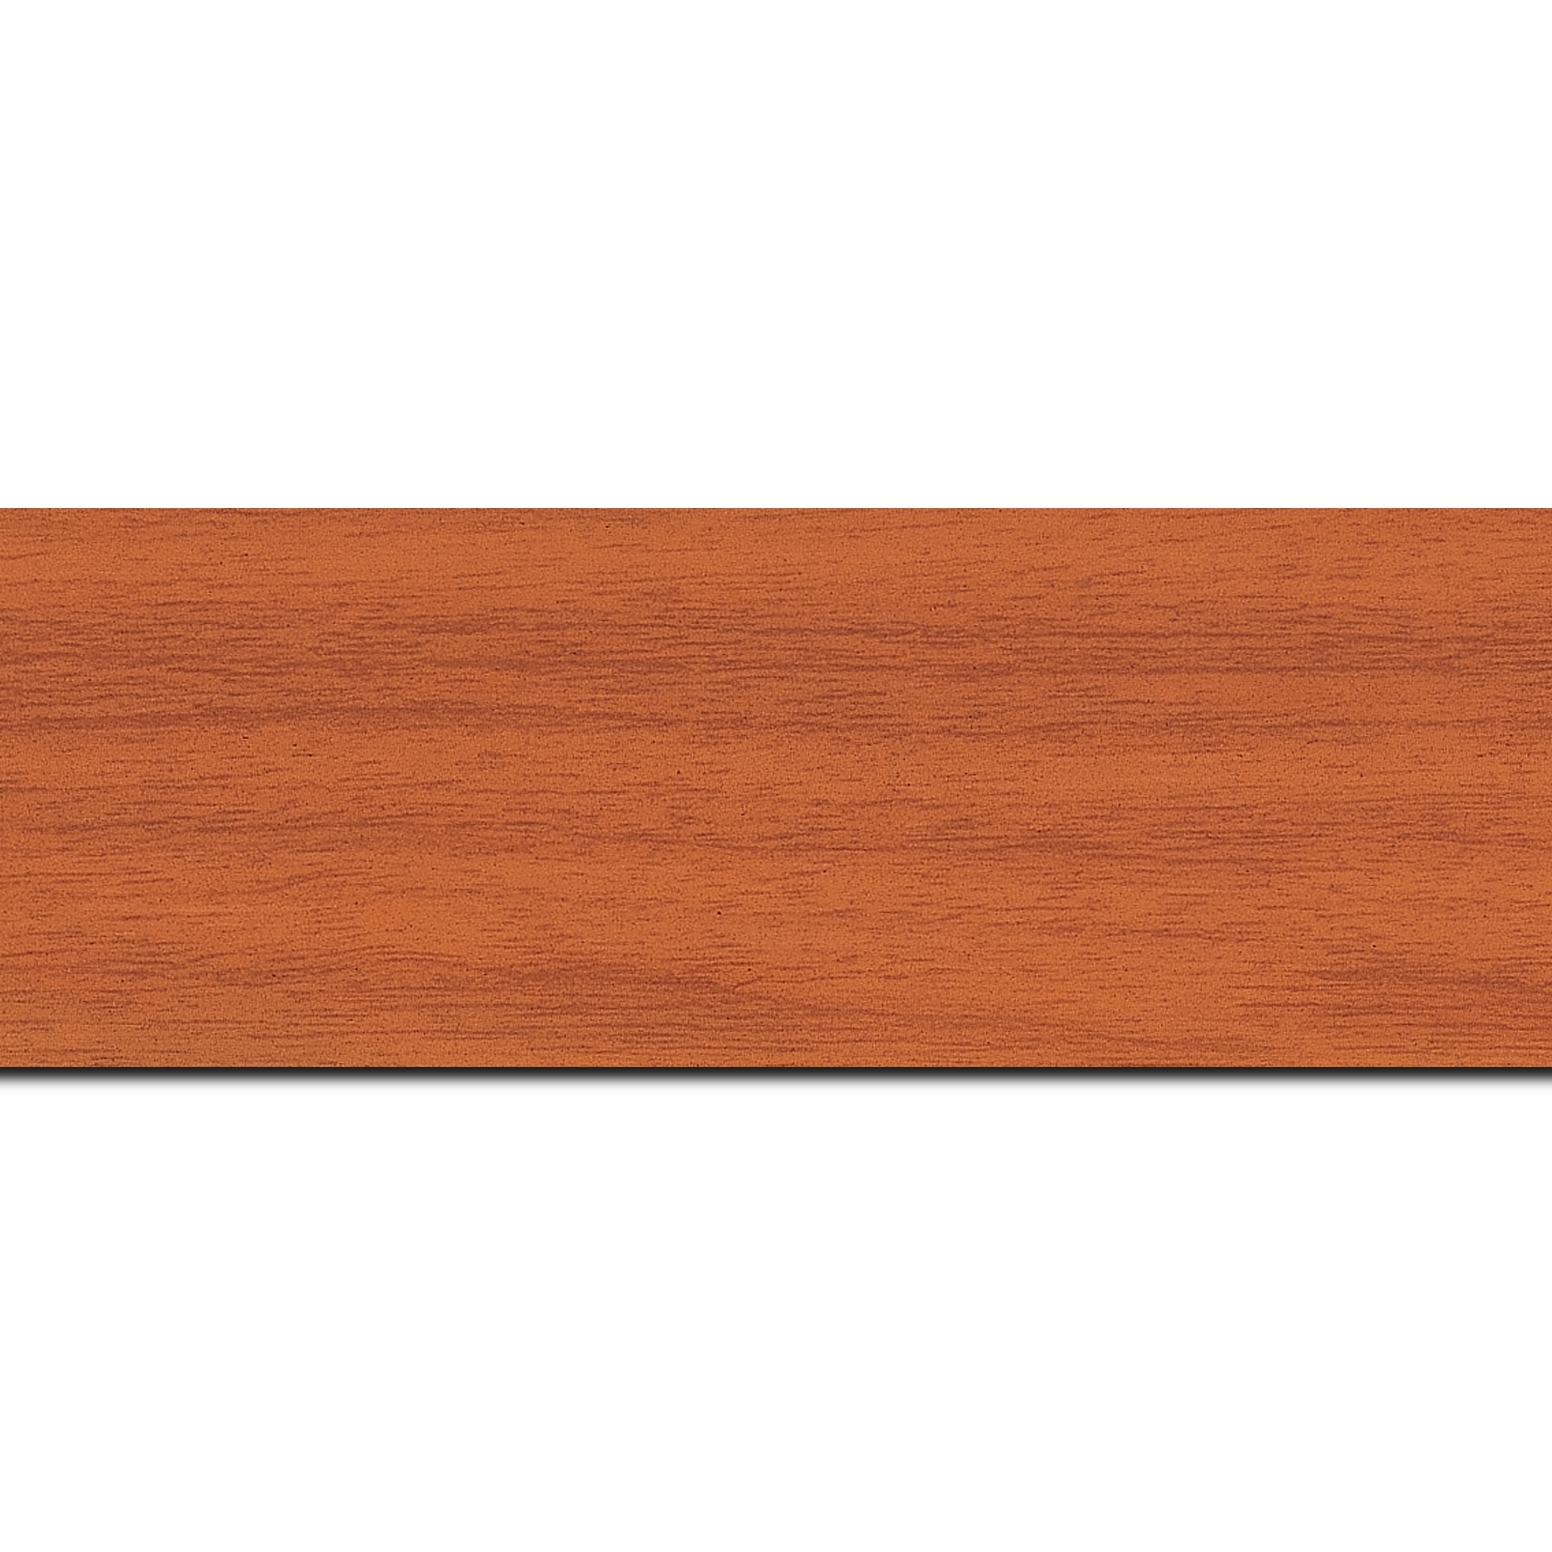 Pack par 12m, bois profil plat largeur 6cm orange satiné effet veiné ,chant extérieur du cadre de couleur noire(longueur baguette pouvant varier entre 2.40m et 3m selon arrivage des bois)